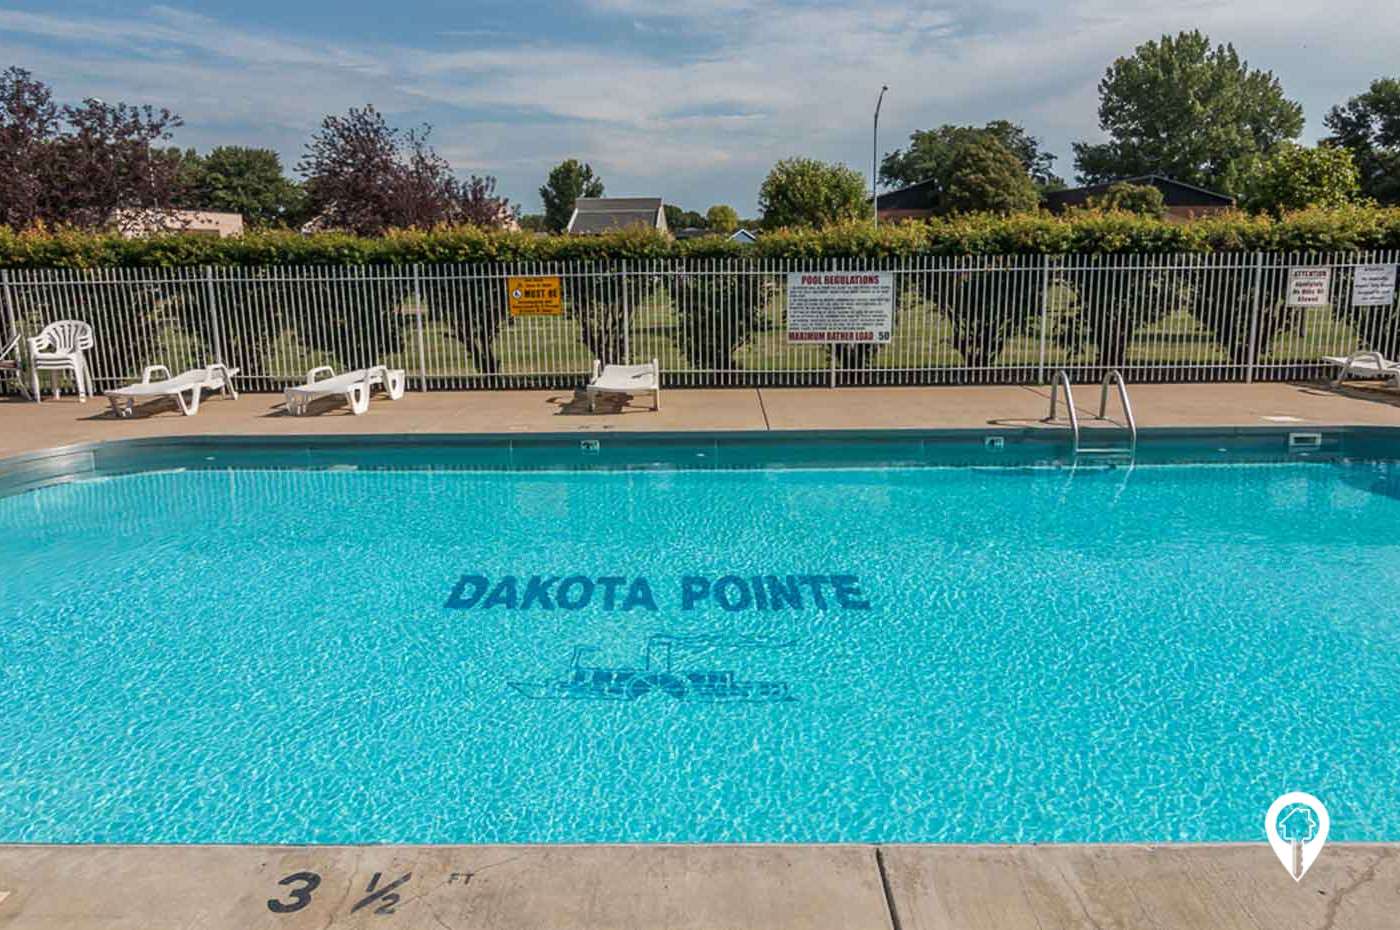 Dakota Pointe Apartments